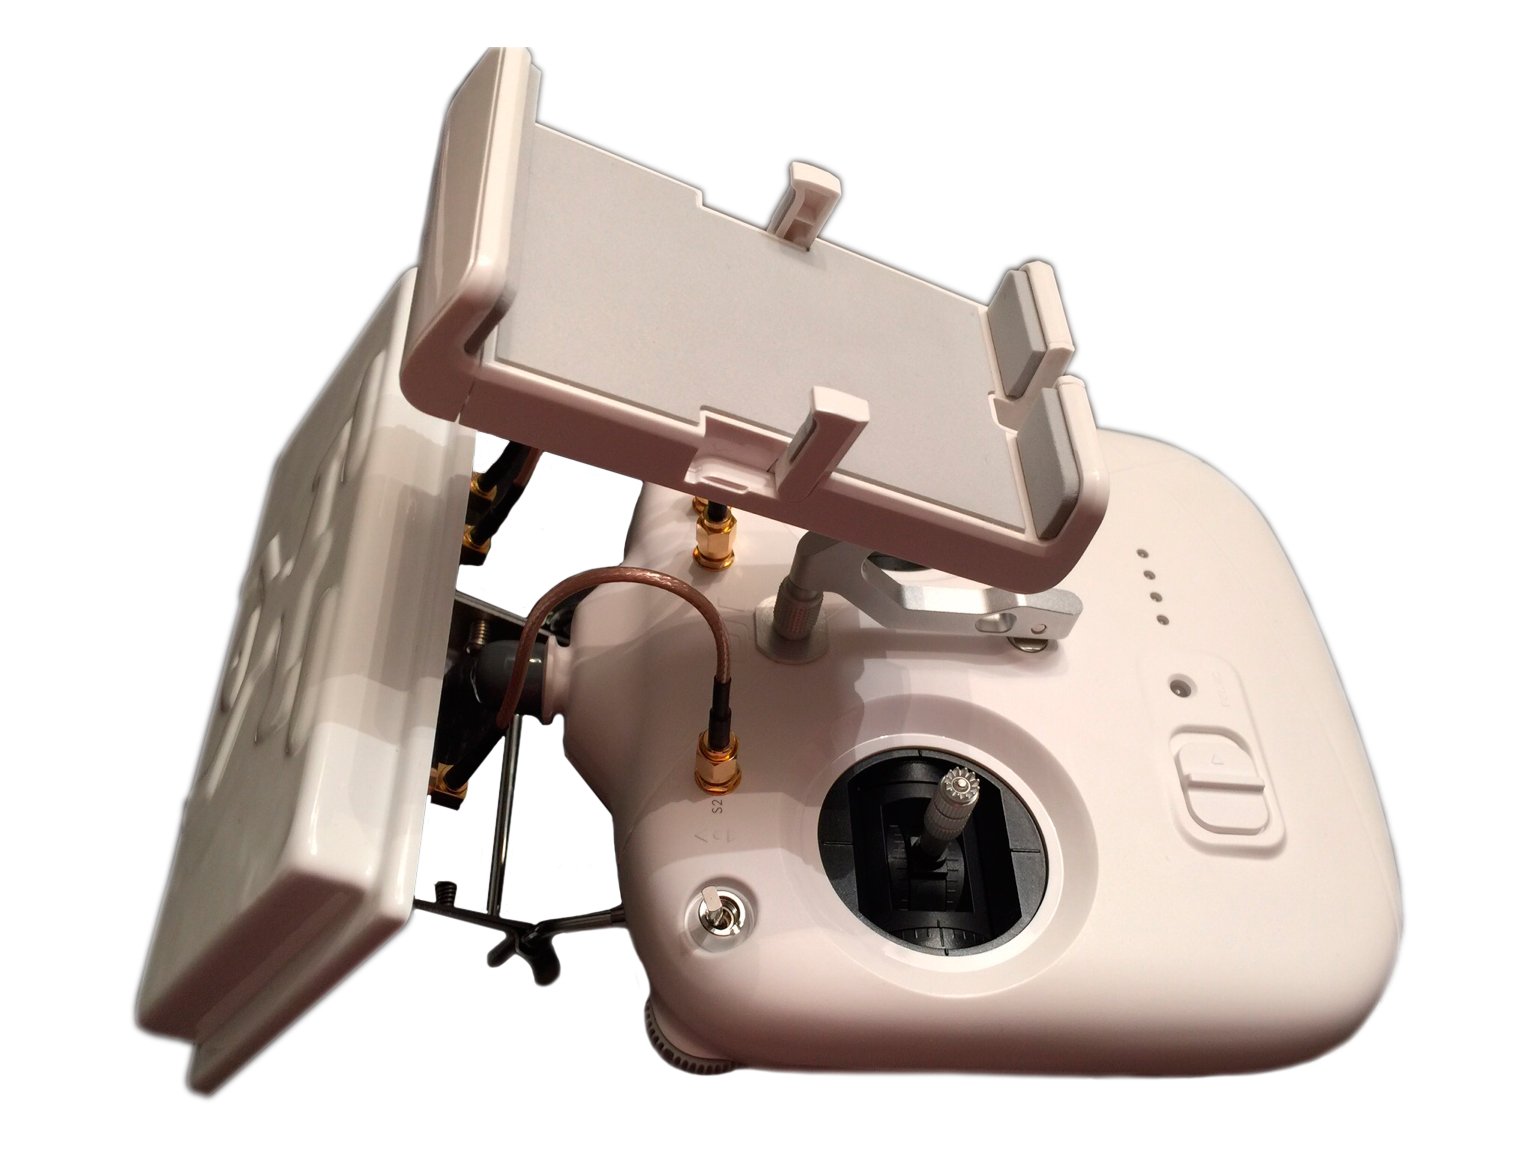 Dji goggles как подключить к бпла фантик набор фильтров для камеры mavic air недорогой